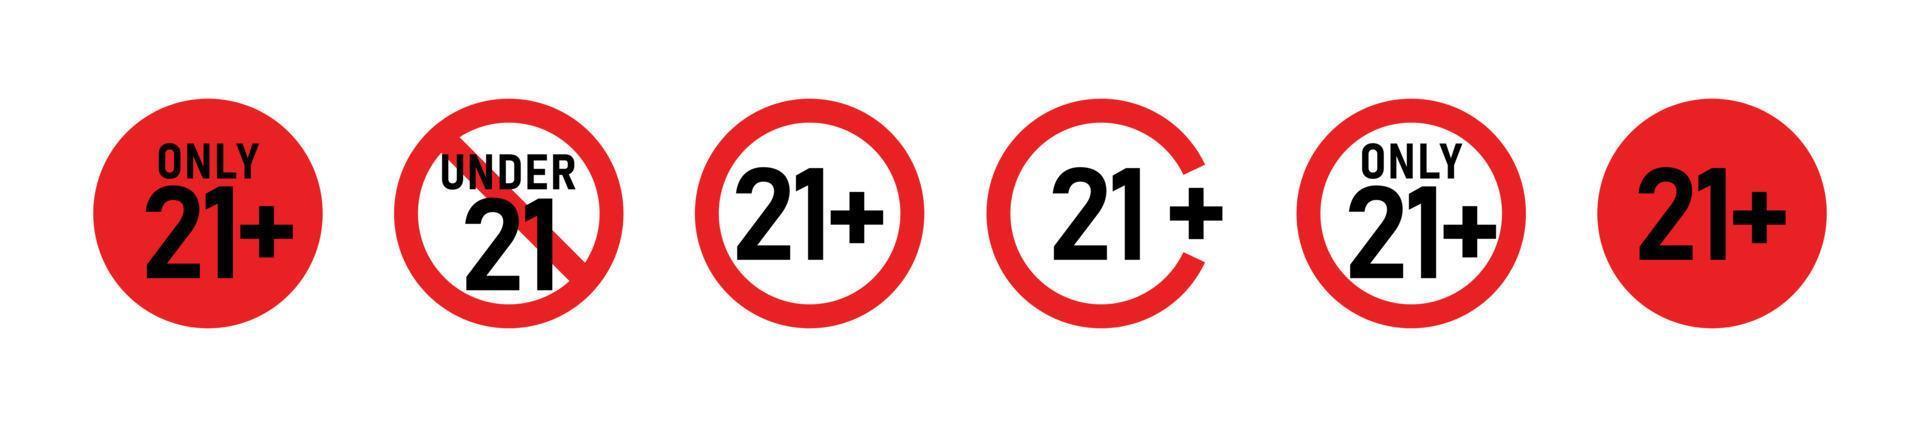 21 más conjunto de signos. veintiuno. sólo para adultos. restricciones de edad, censura. ícono de contenido, películas, alcohol, clubes y bares. vector